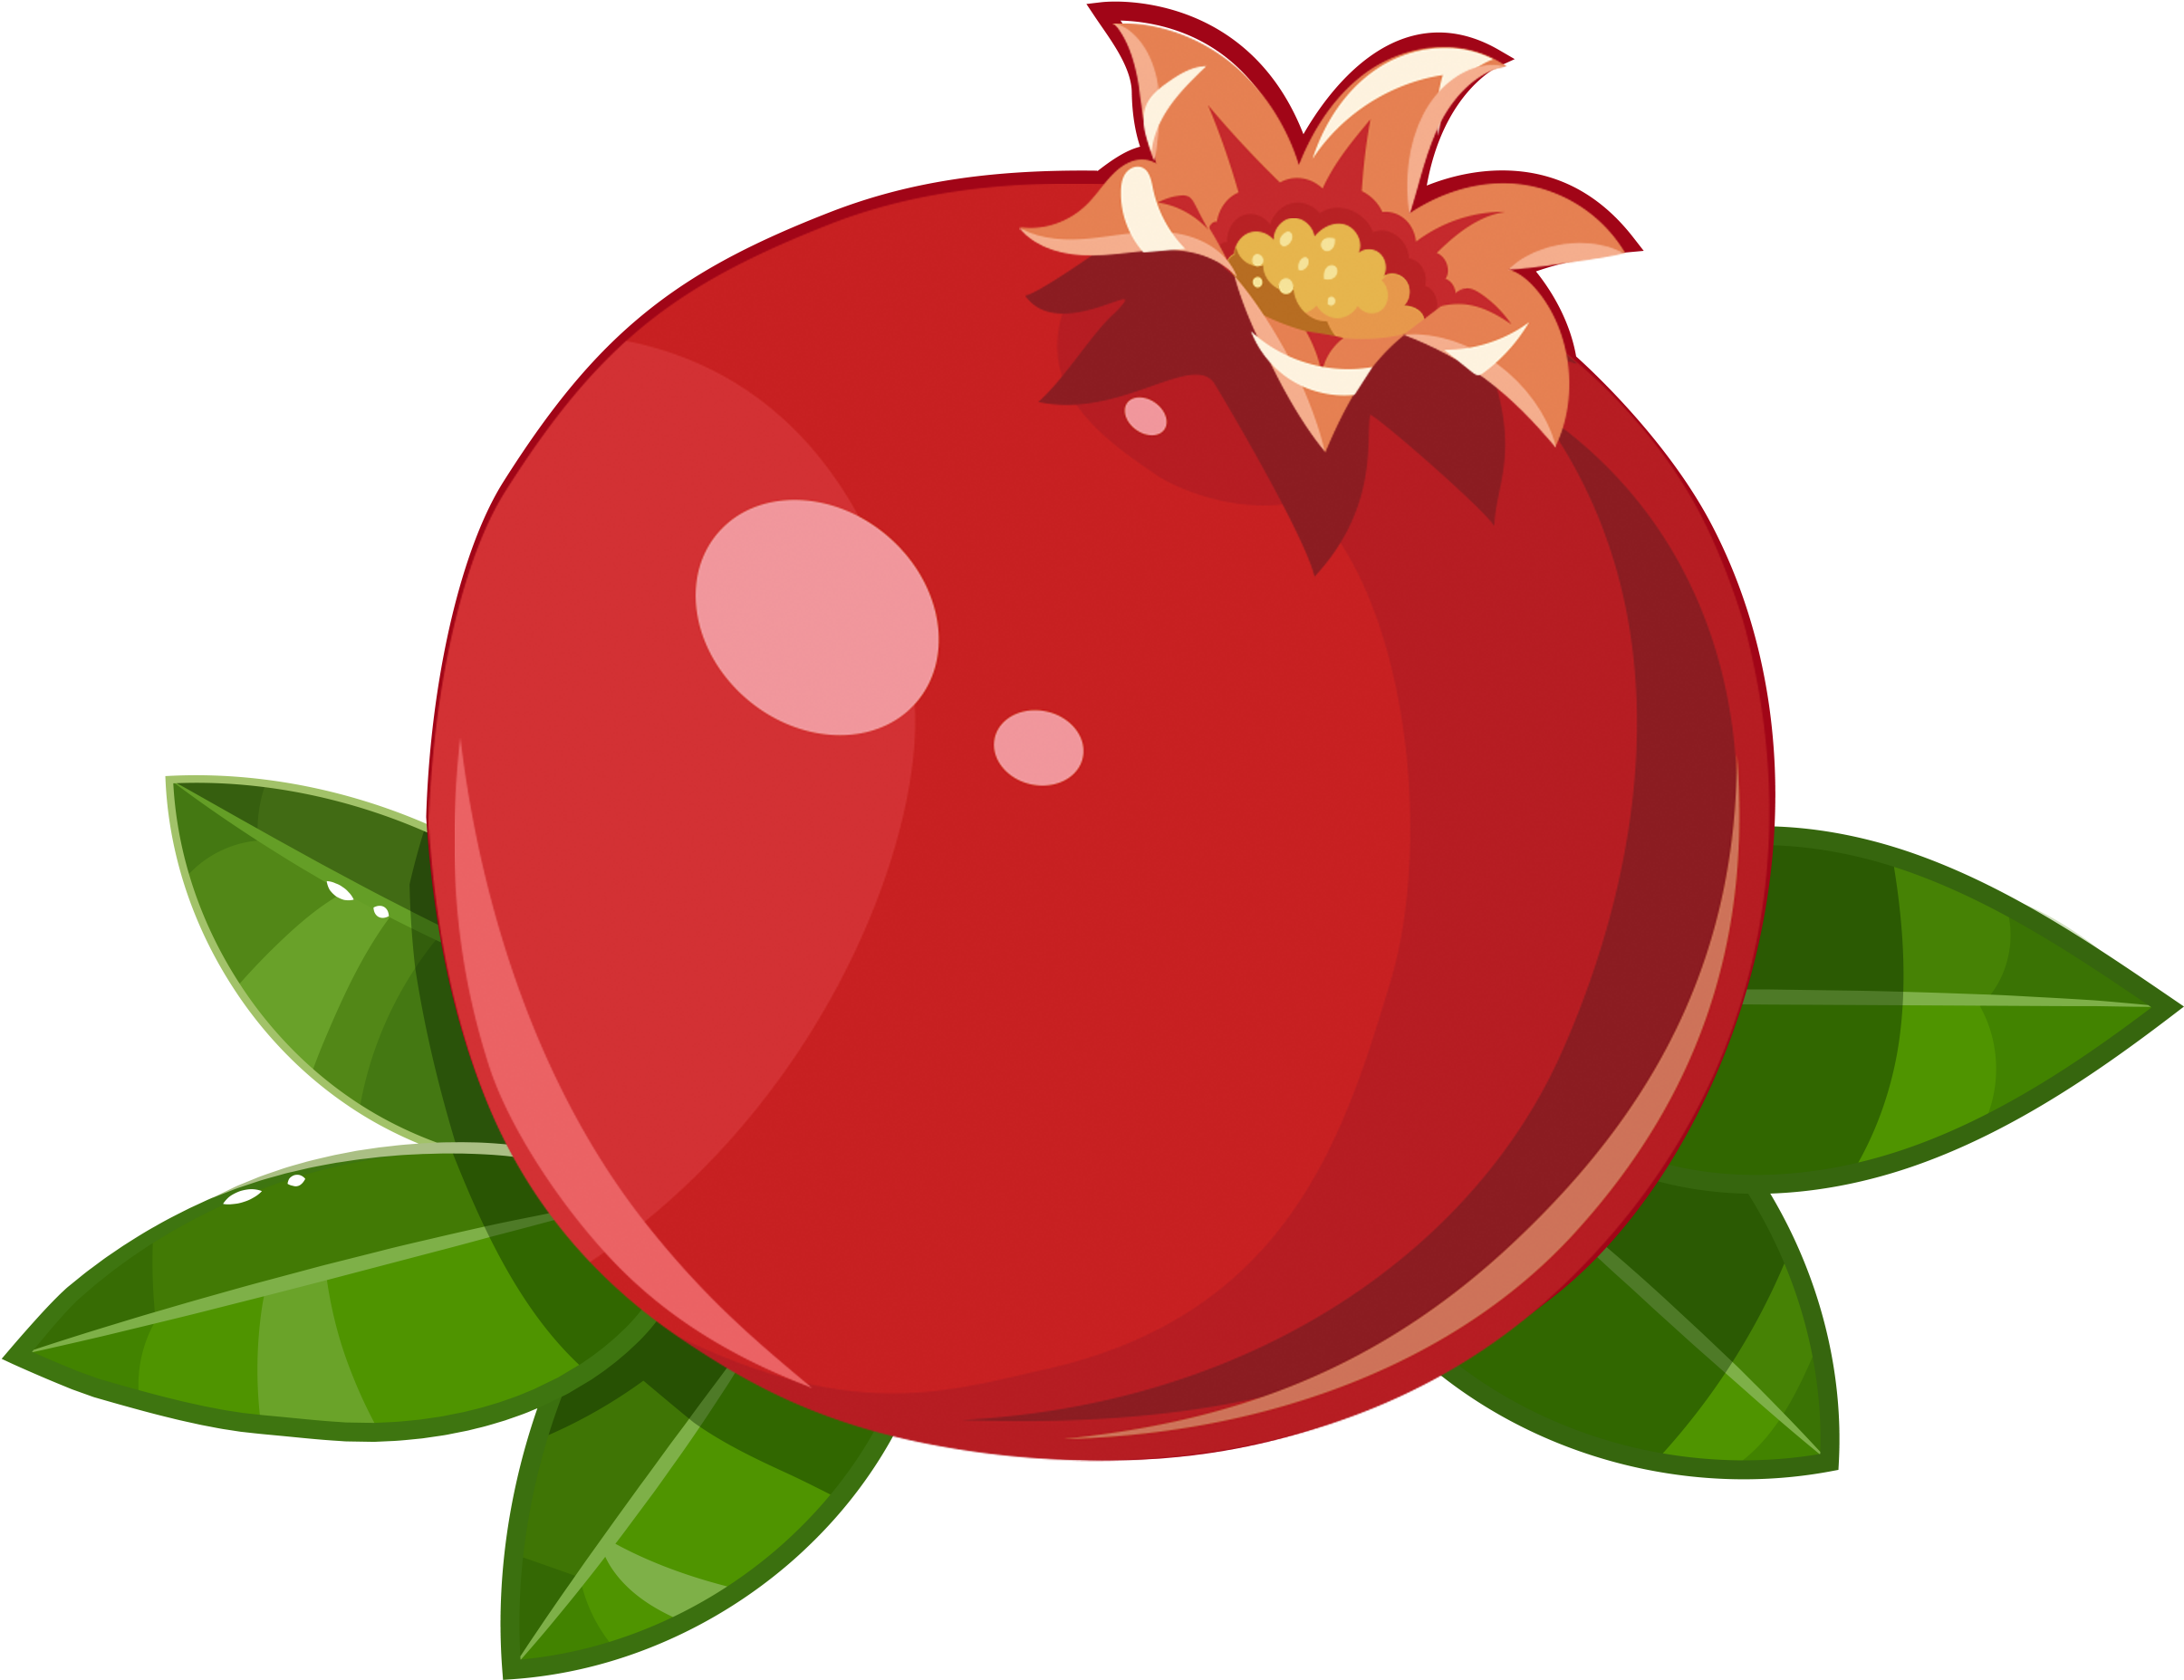 Pomegranate Frutti Di Bosco Fruit Illustration - Pomegranate Frutti Di Bosco Fruit Illustration (3608x2558)